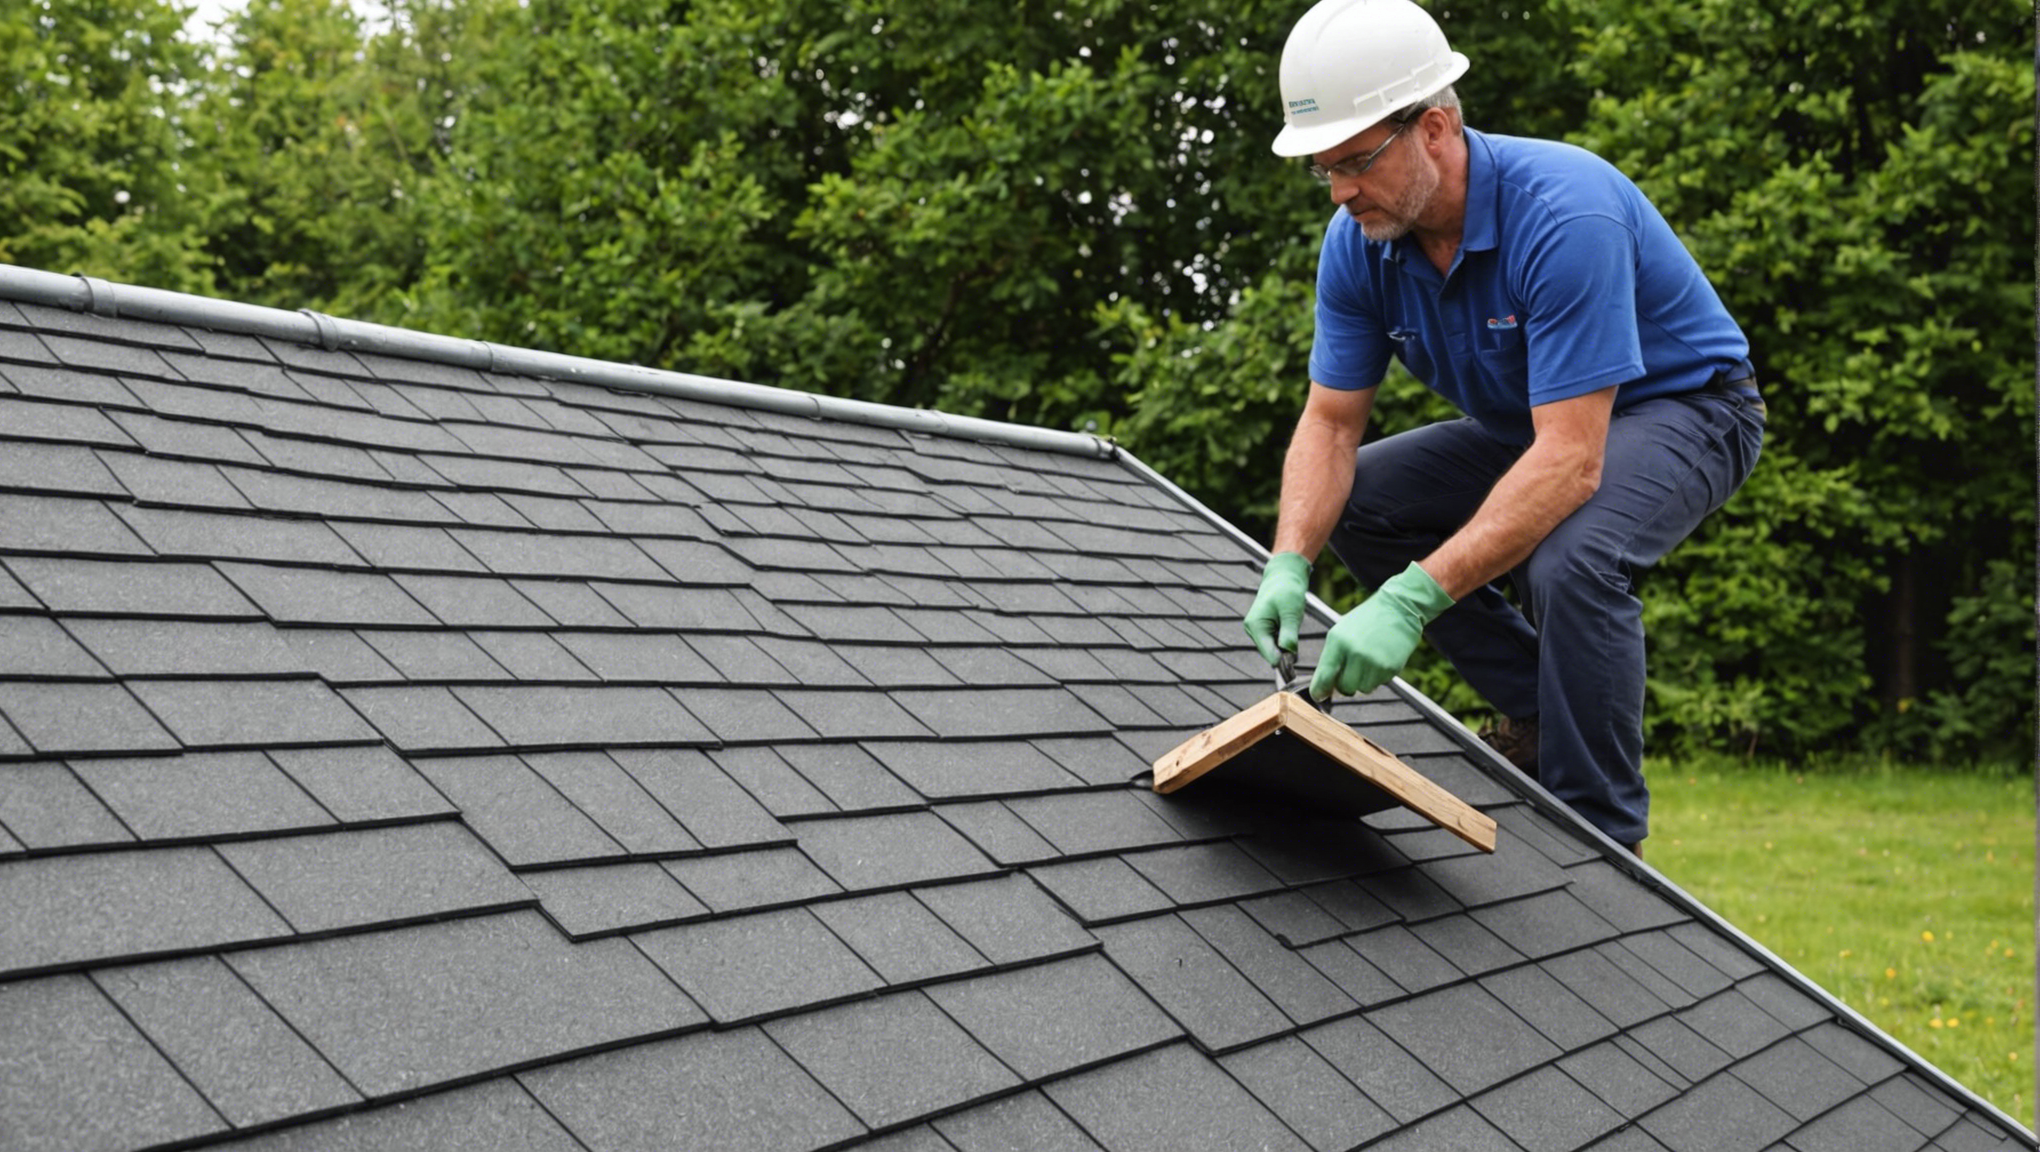 expert en réparation de toiture, notre équipe qualifiée intervient rapidement et efficacement pour tous vos besoins de réparation et d'entretien de toiture.